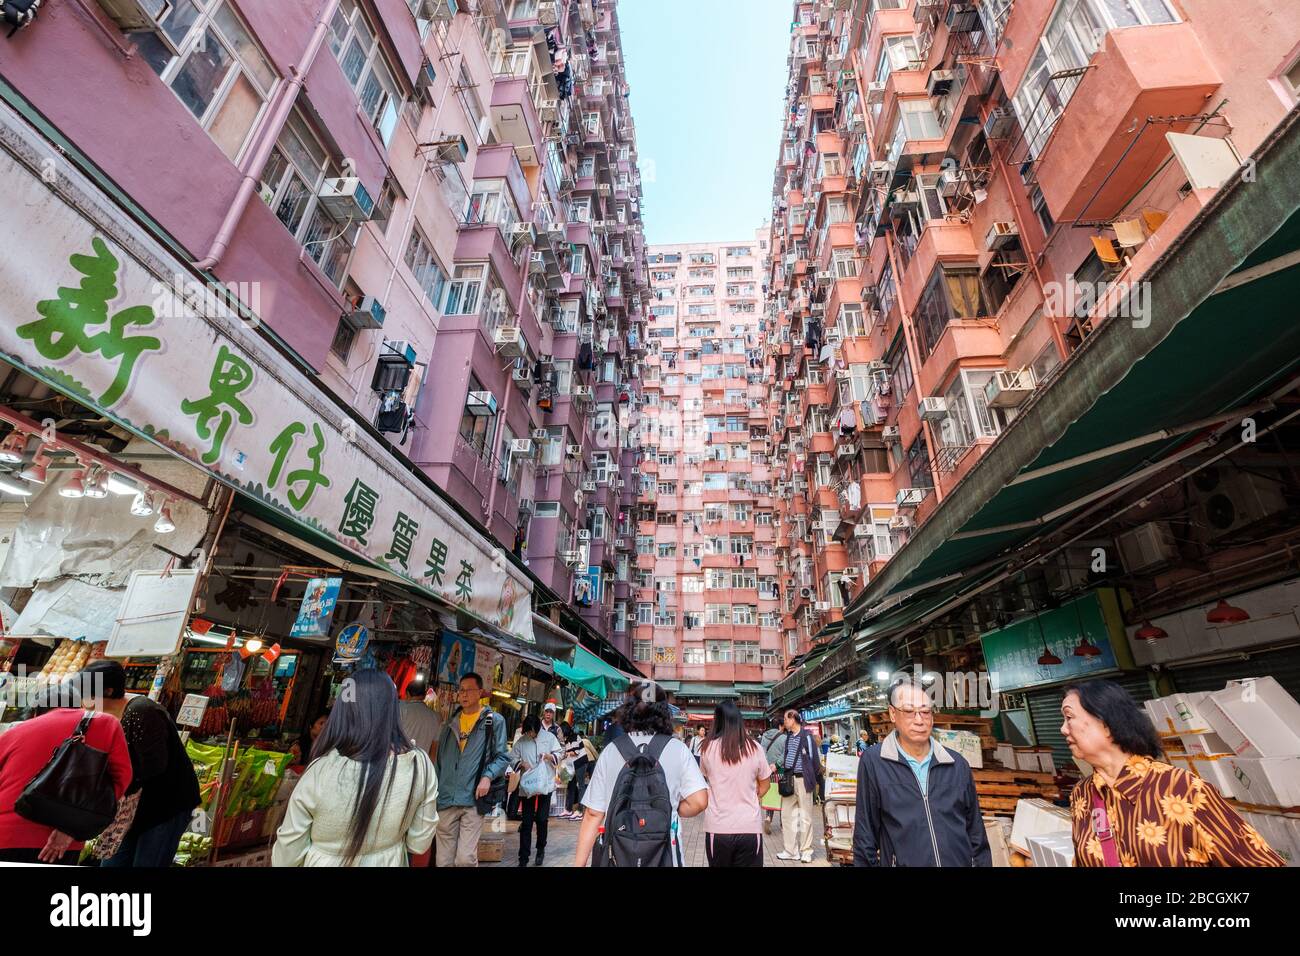 Hong Kong, China - November, 2019: People on street food market in Hong Kong Stock Photo